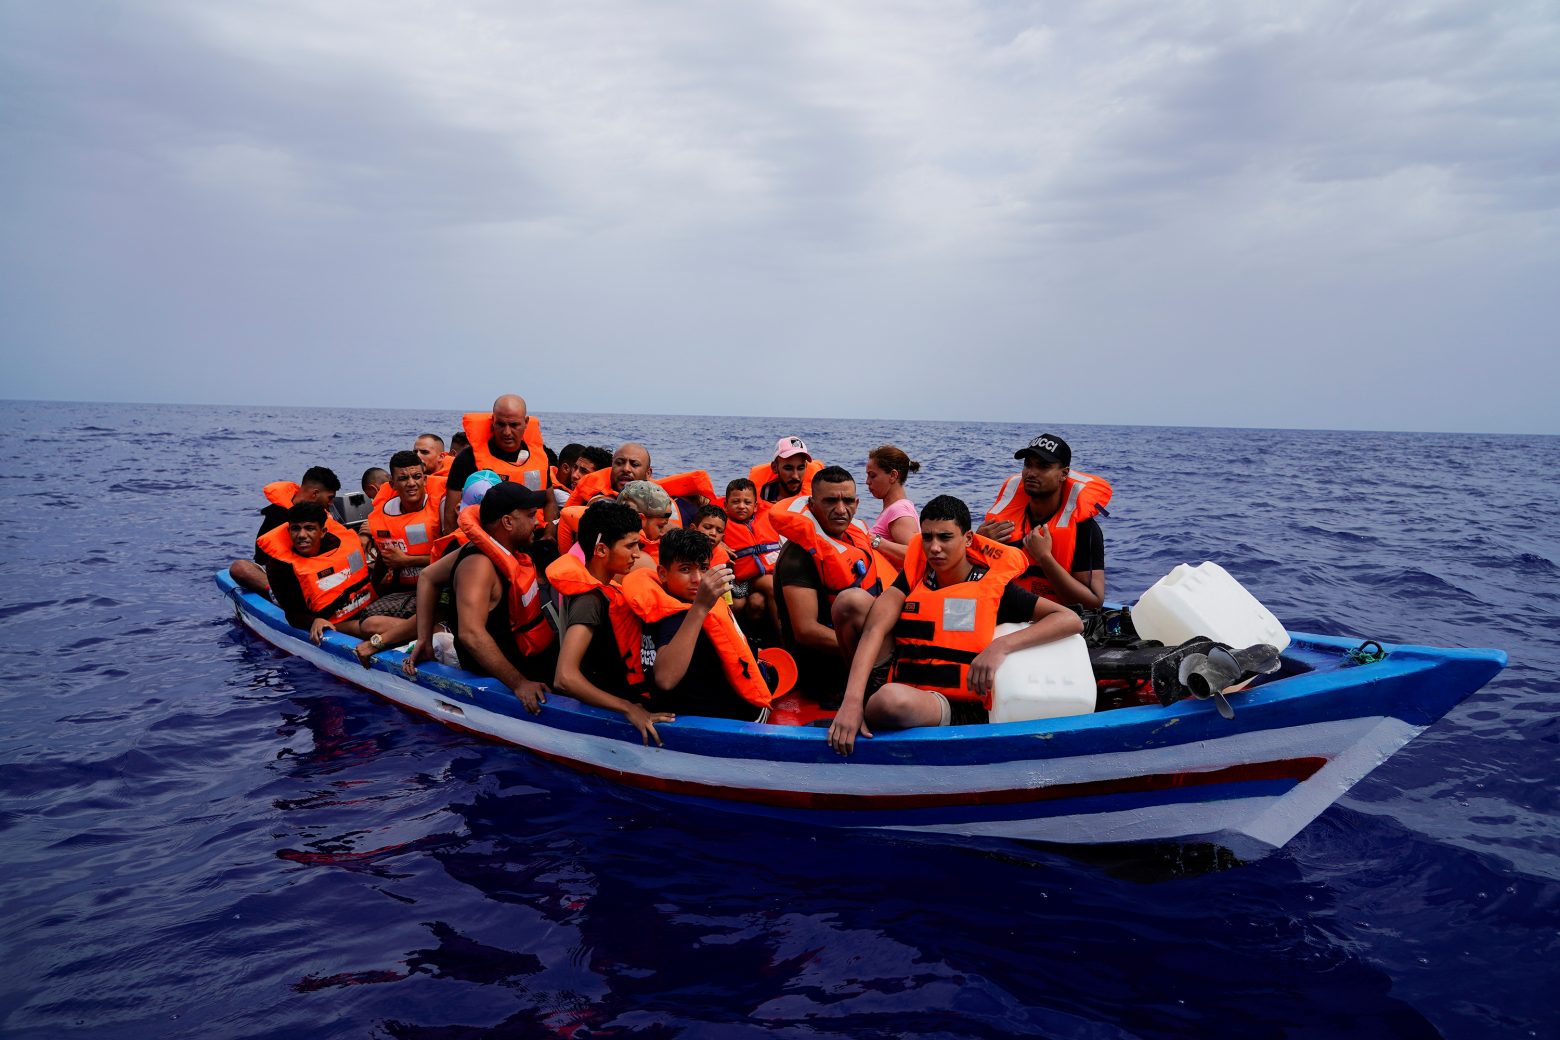 Ισπανία - Νέα τραγωδία με 11 νεκρούς μετανάστες ανοιχτά των Βαλεαρίδων Νήσων